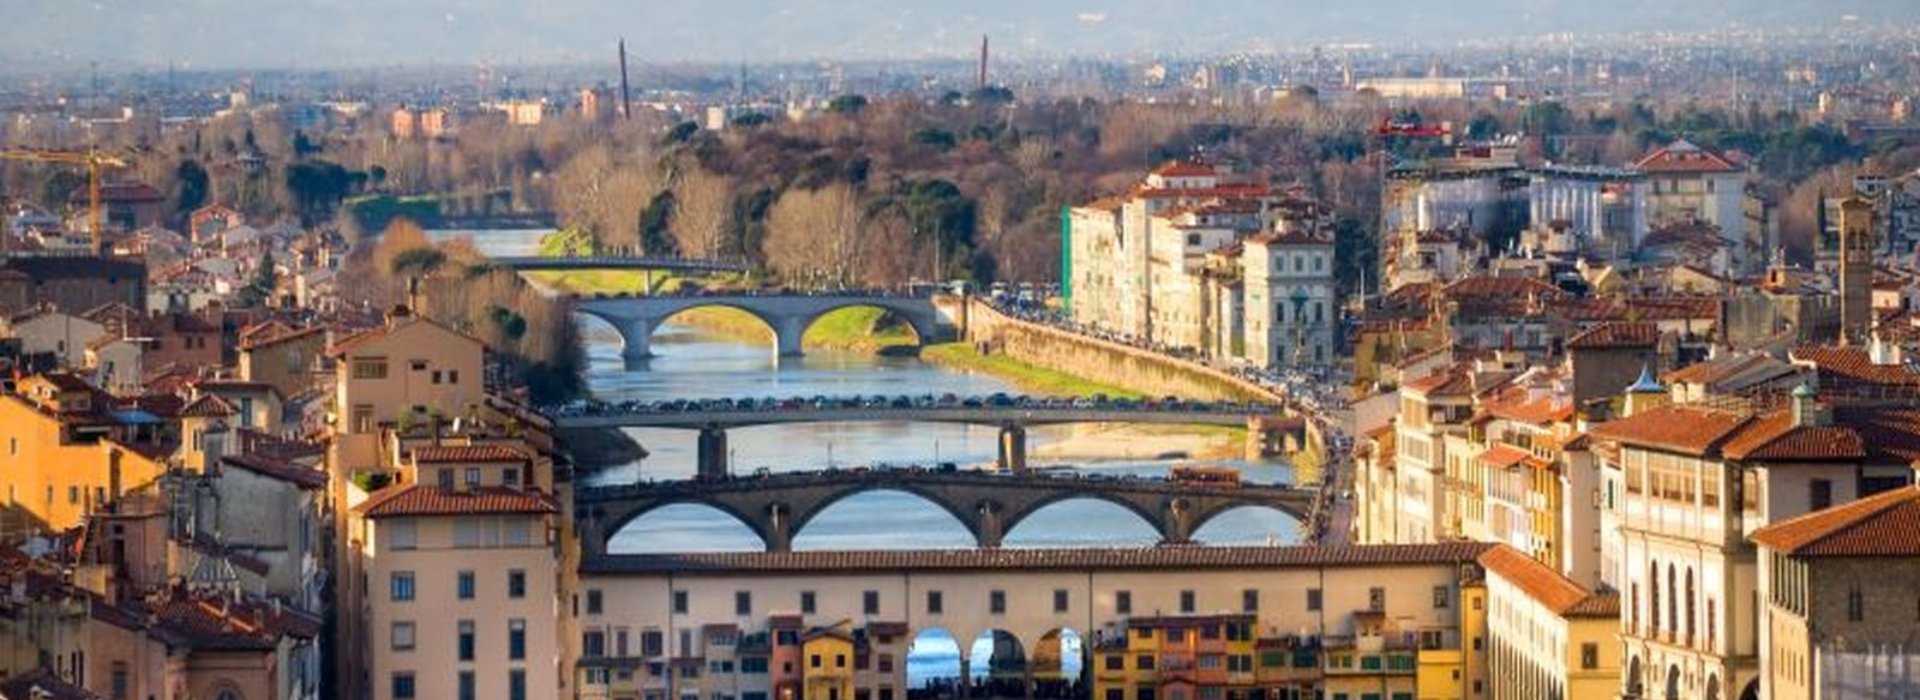 Tour di Firenze per vedere il meglio della città